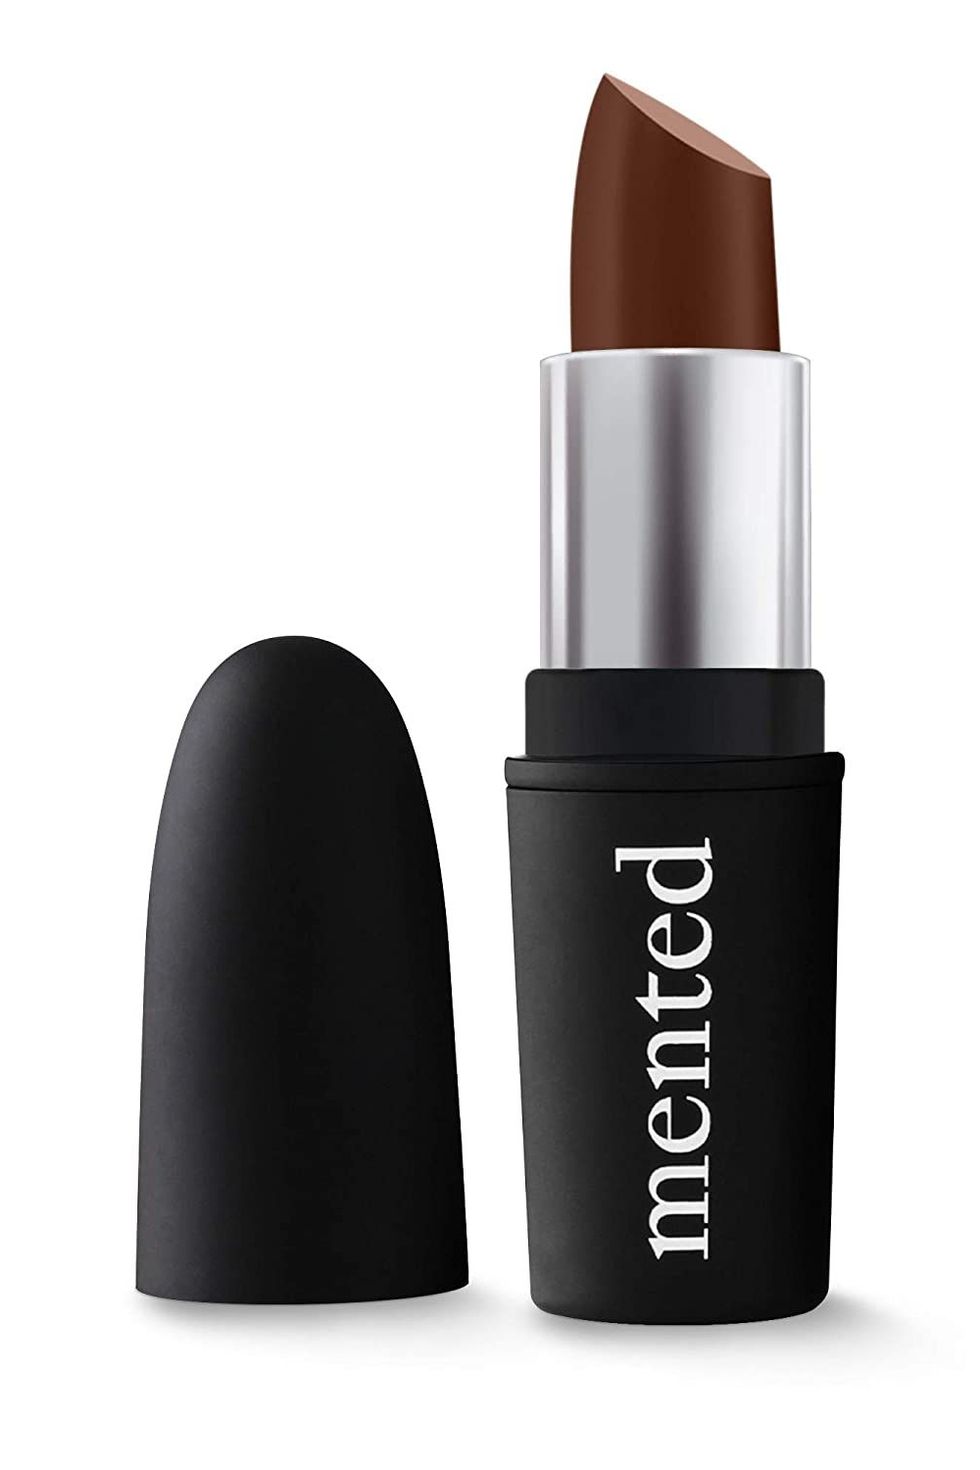 The Best Dark Lipsticks For Autumn 2020